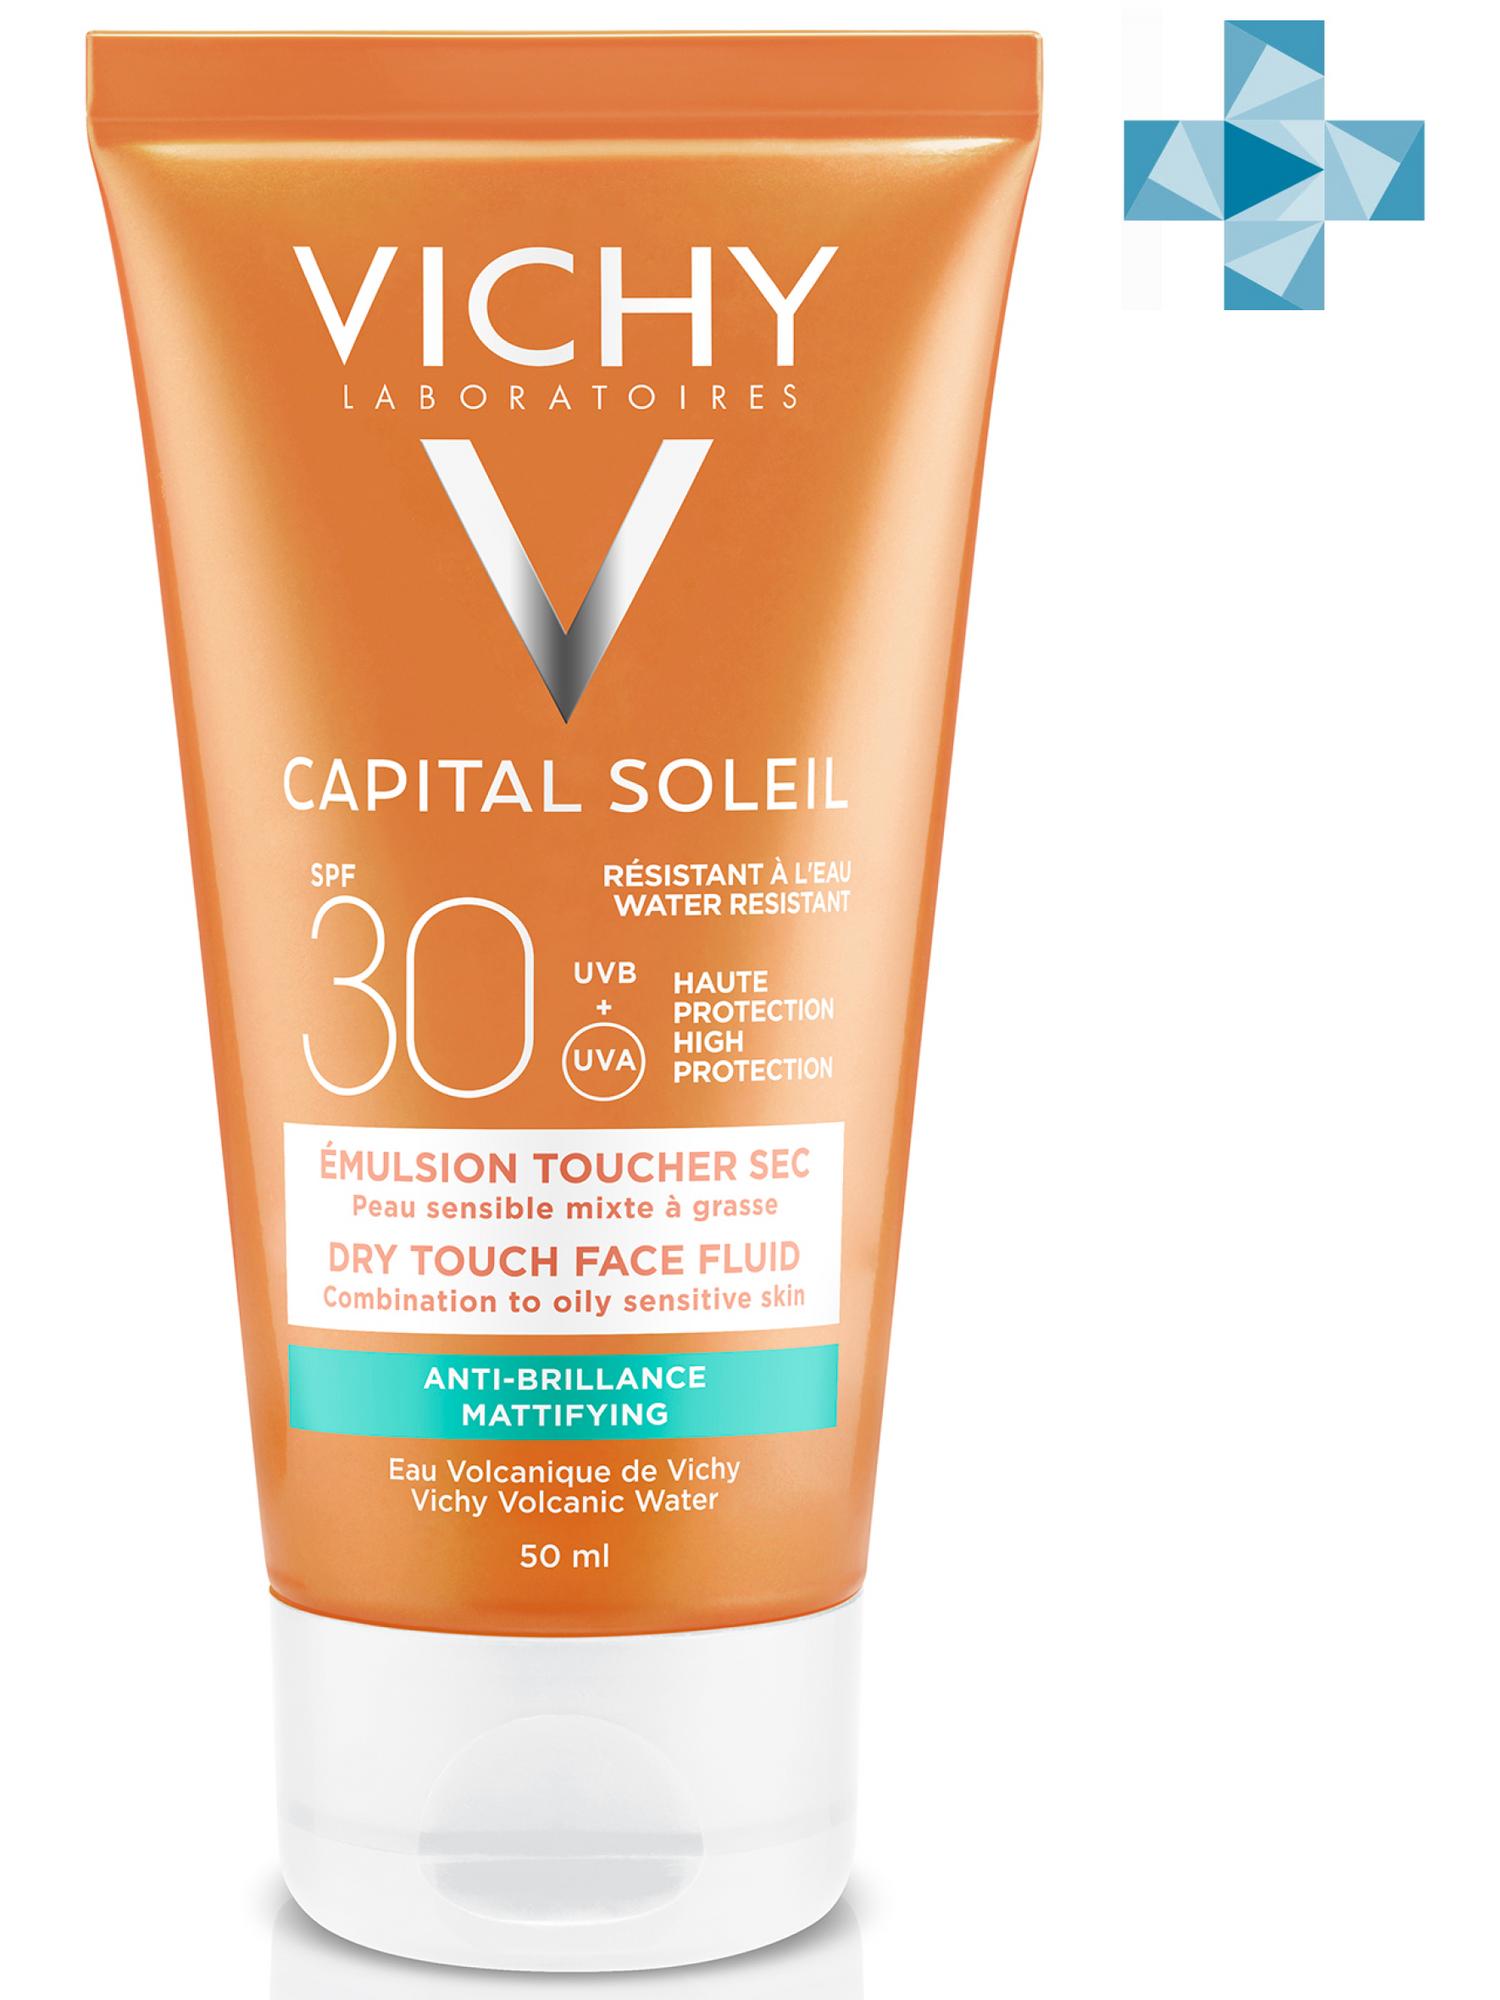 Vichy Солнцезащитная матирующая эмульсия Dry Touch для жирной кожи лица SPF 30, 50 мл (Vichy, Capital Soleil)